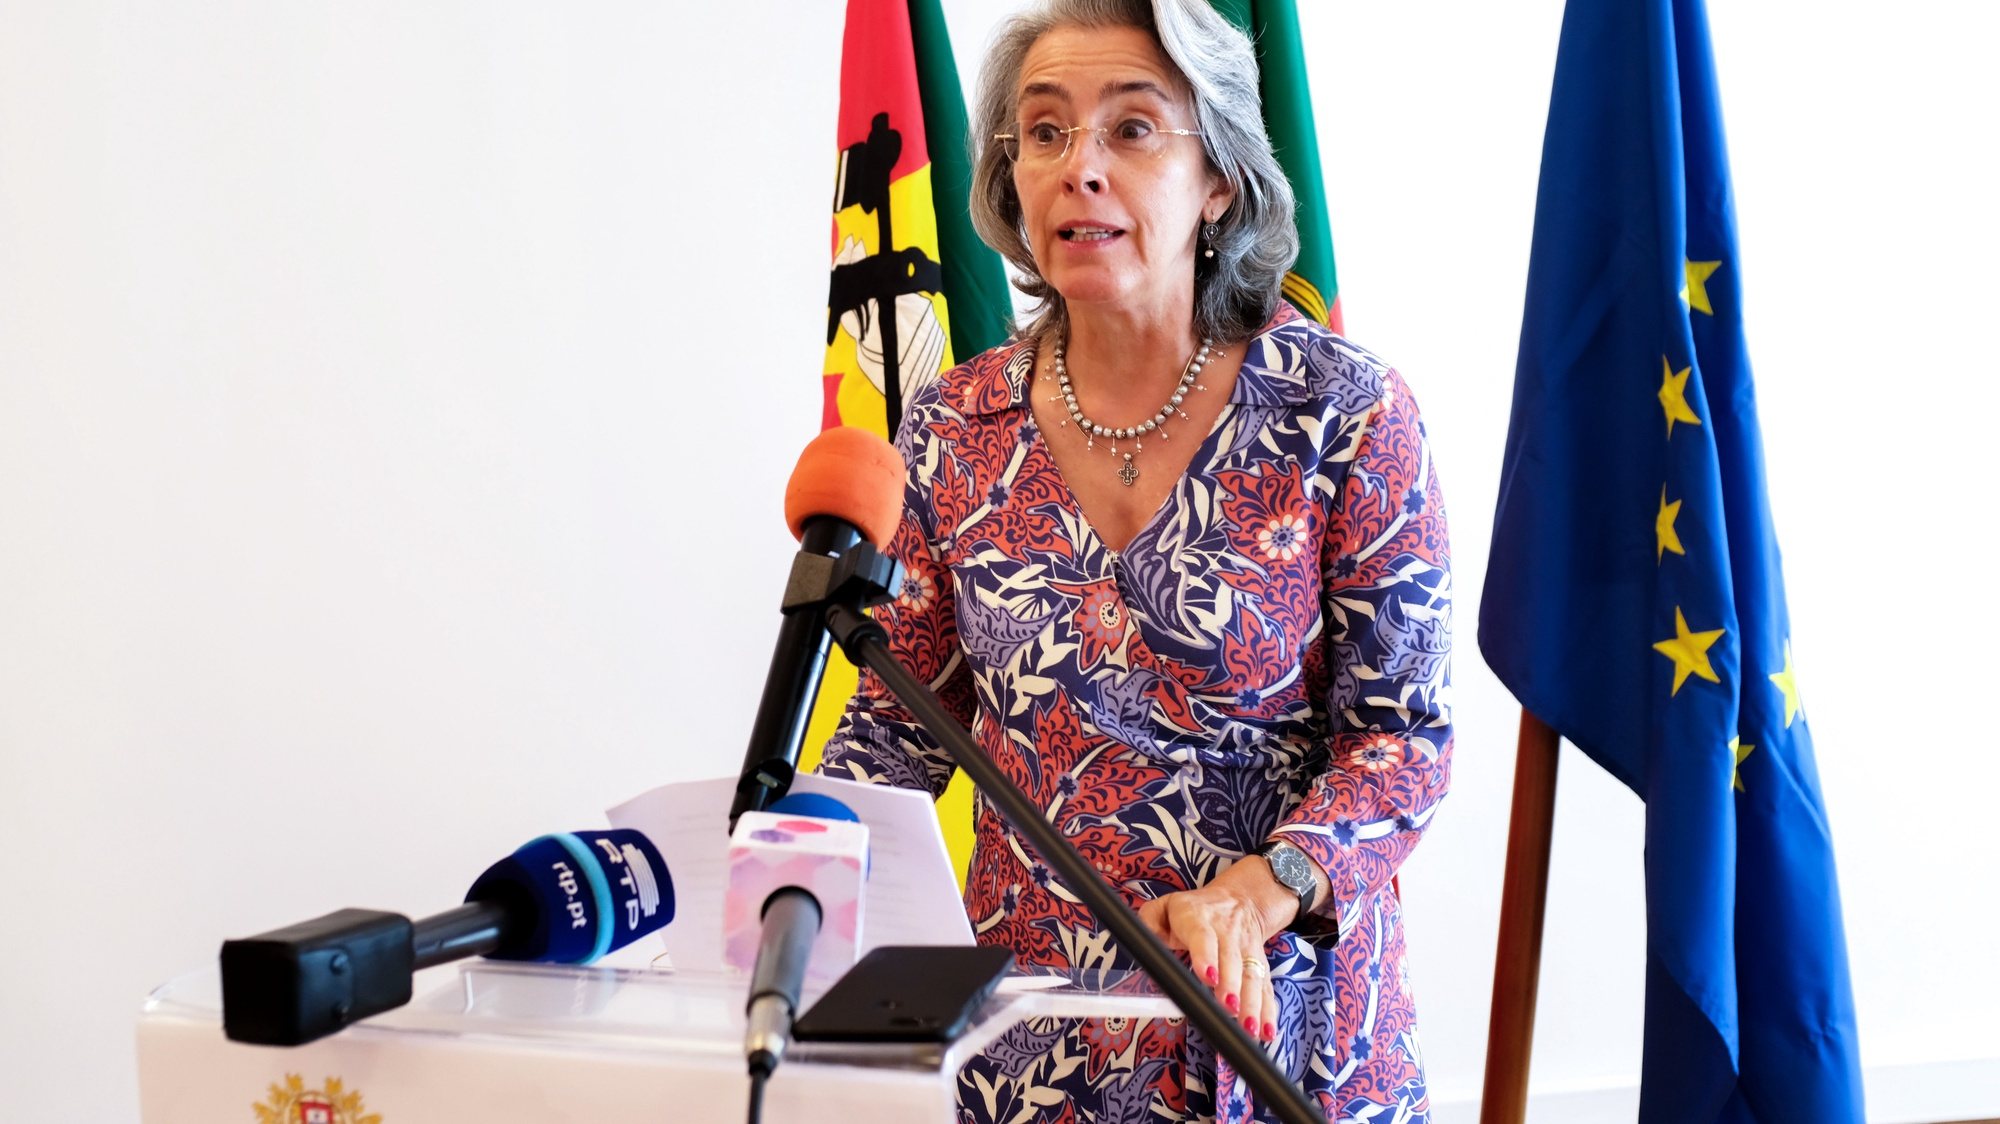 A embaixadora de Portugal, Maria Amélia Paiva , intervem no final da cerimónia de assinatiura de um contrato entre a SOFID e a APIEX, Maputo, Moçambique, 27 de setembro de 2019.  ANTÓNIO SILVA/LUSA